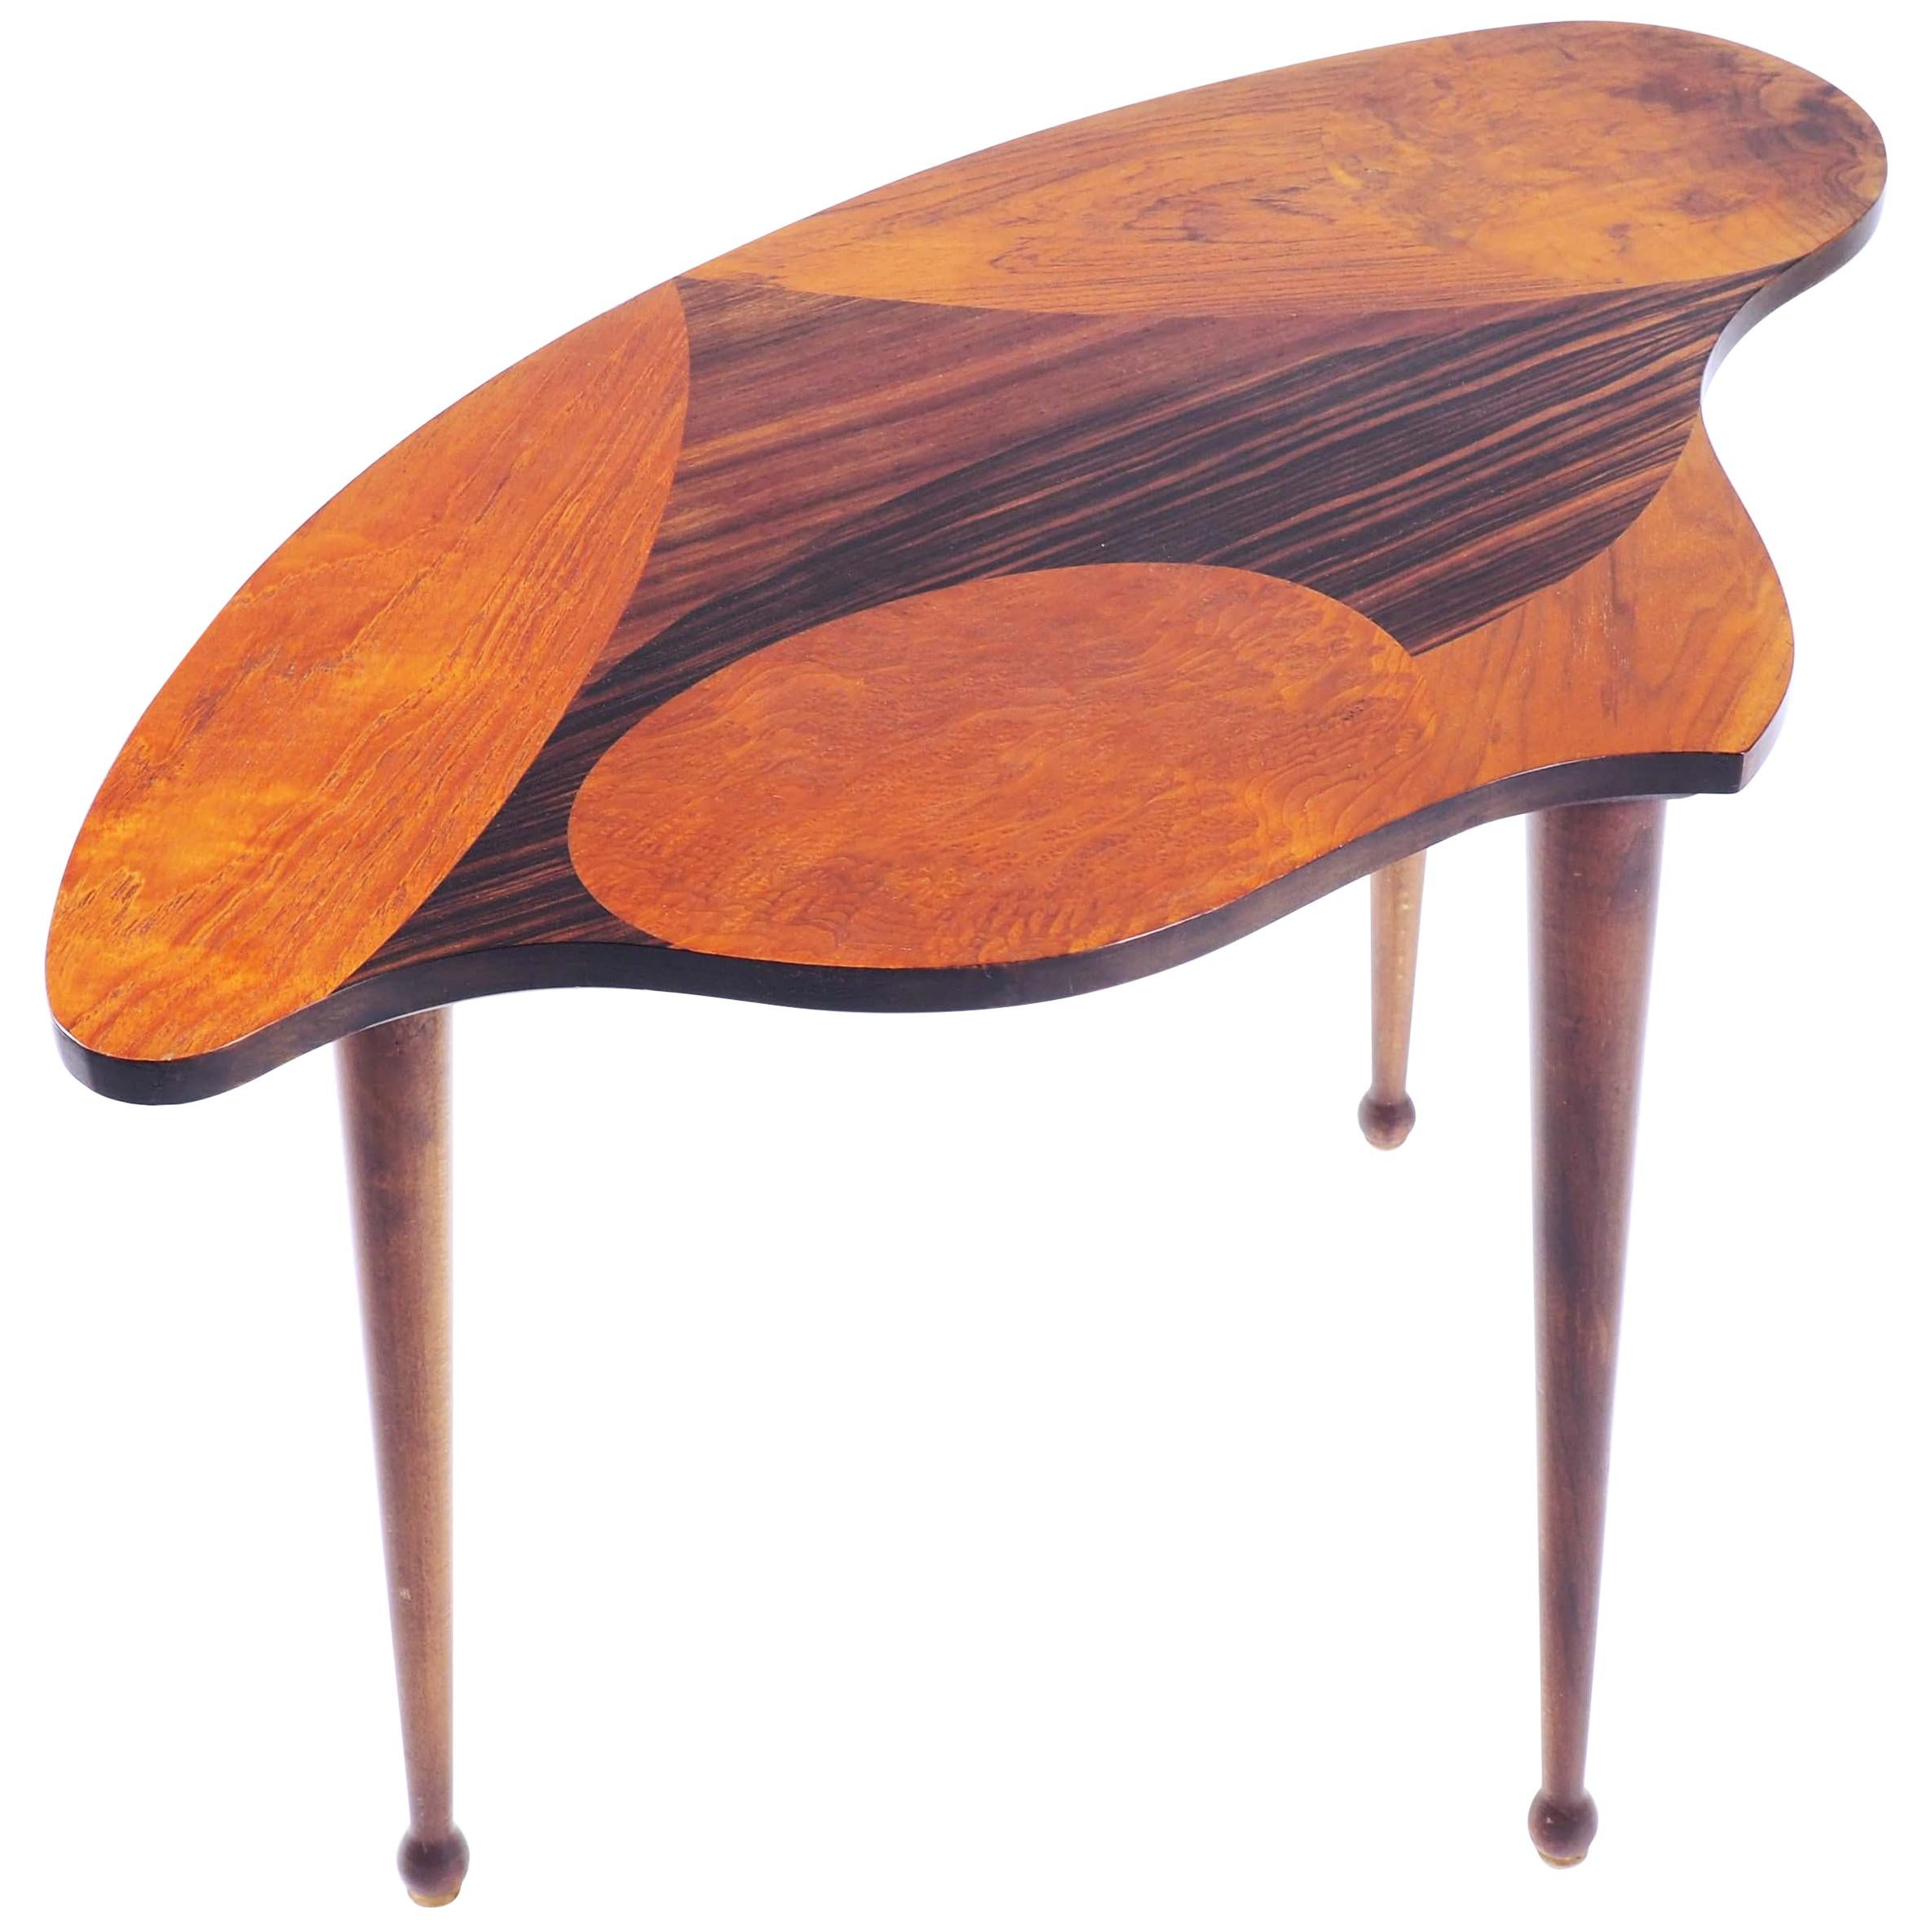 Table d'appoint suédoise de forme organique avec bois incrusté en vente